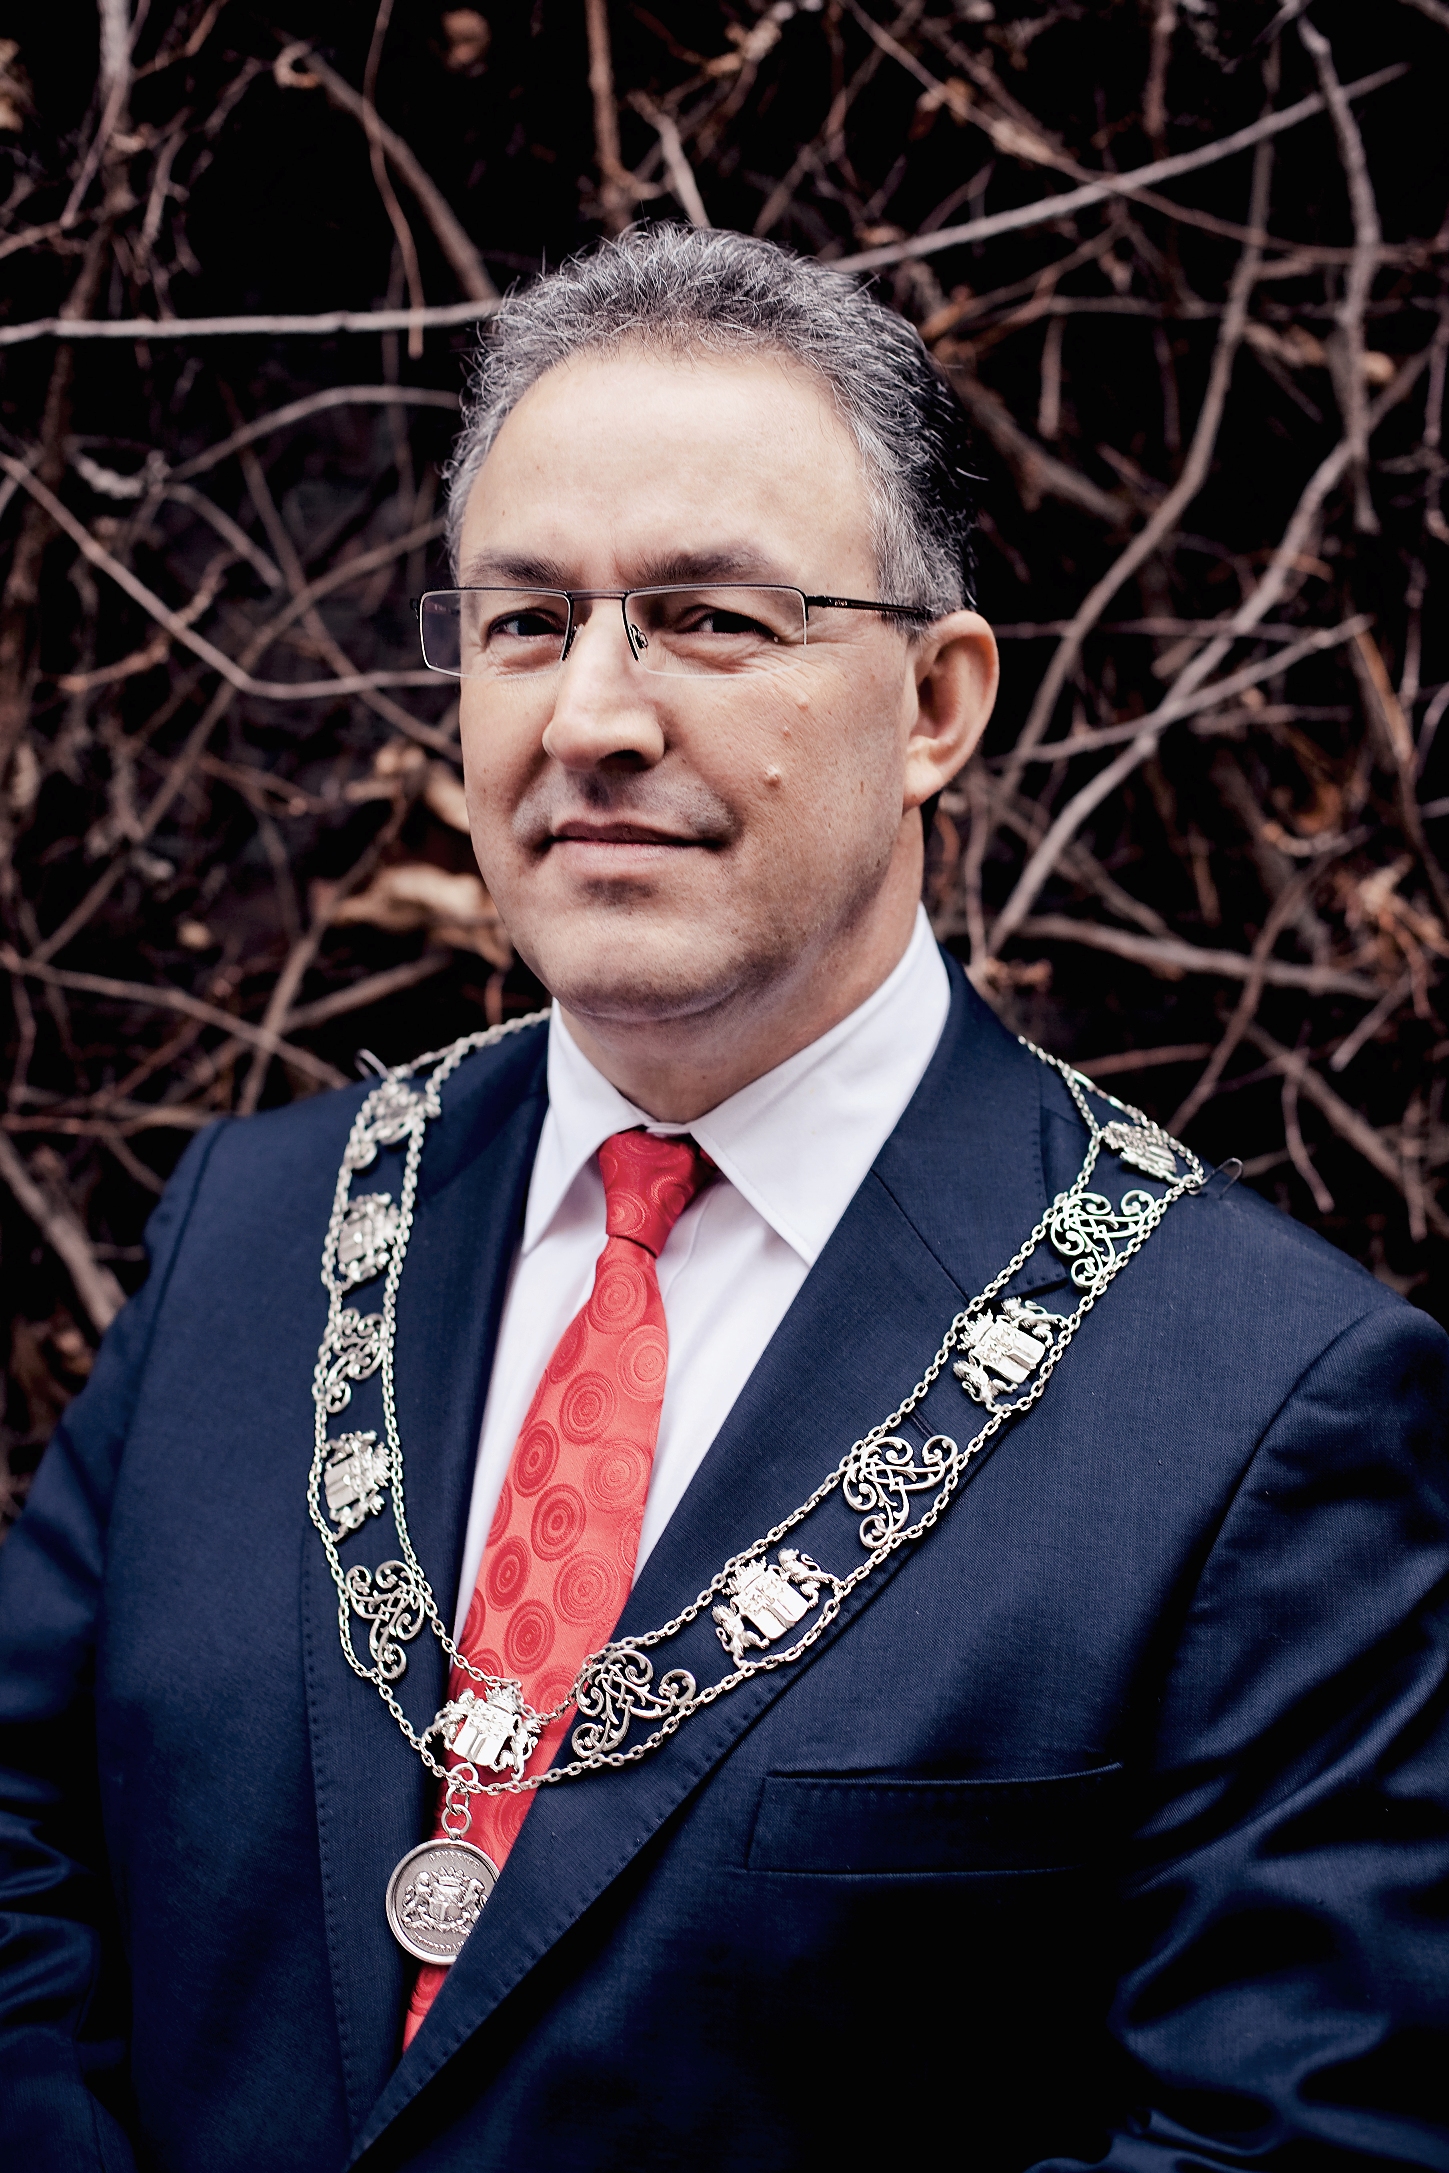 Mayor Aboutaleb